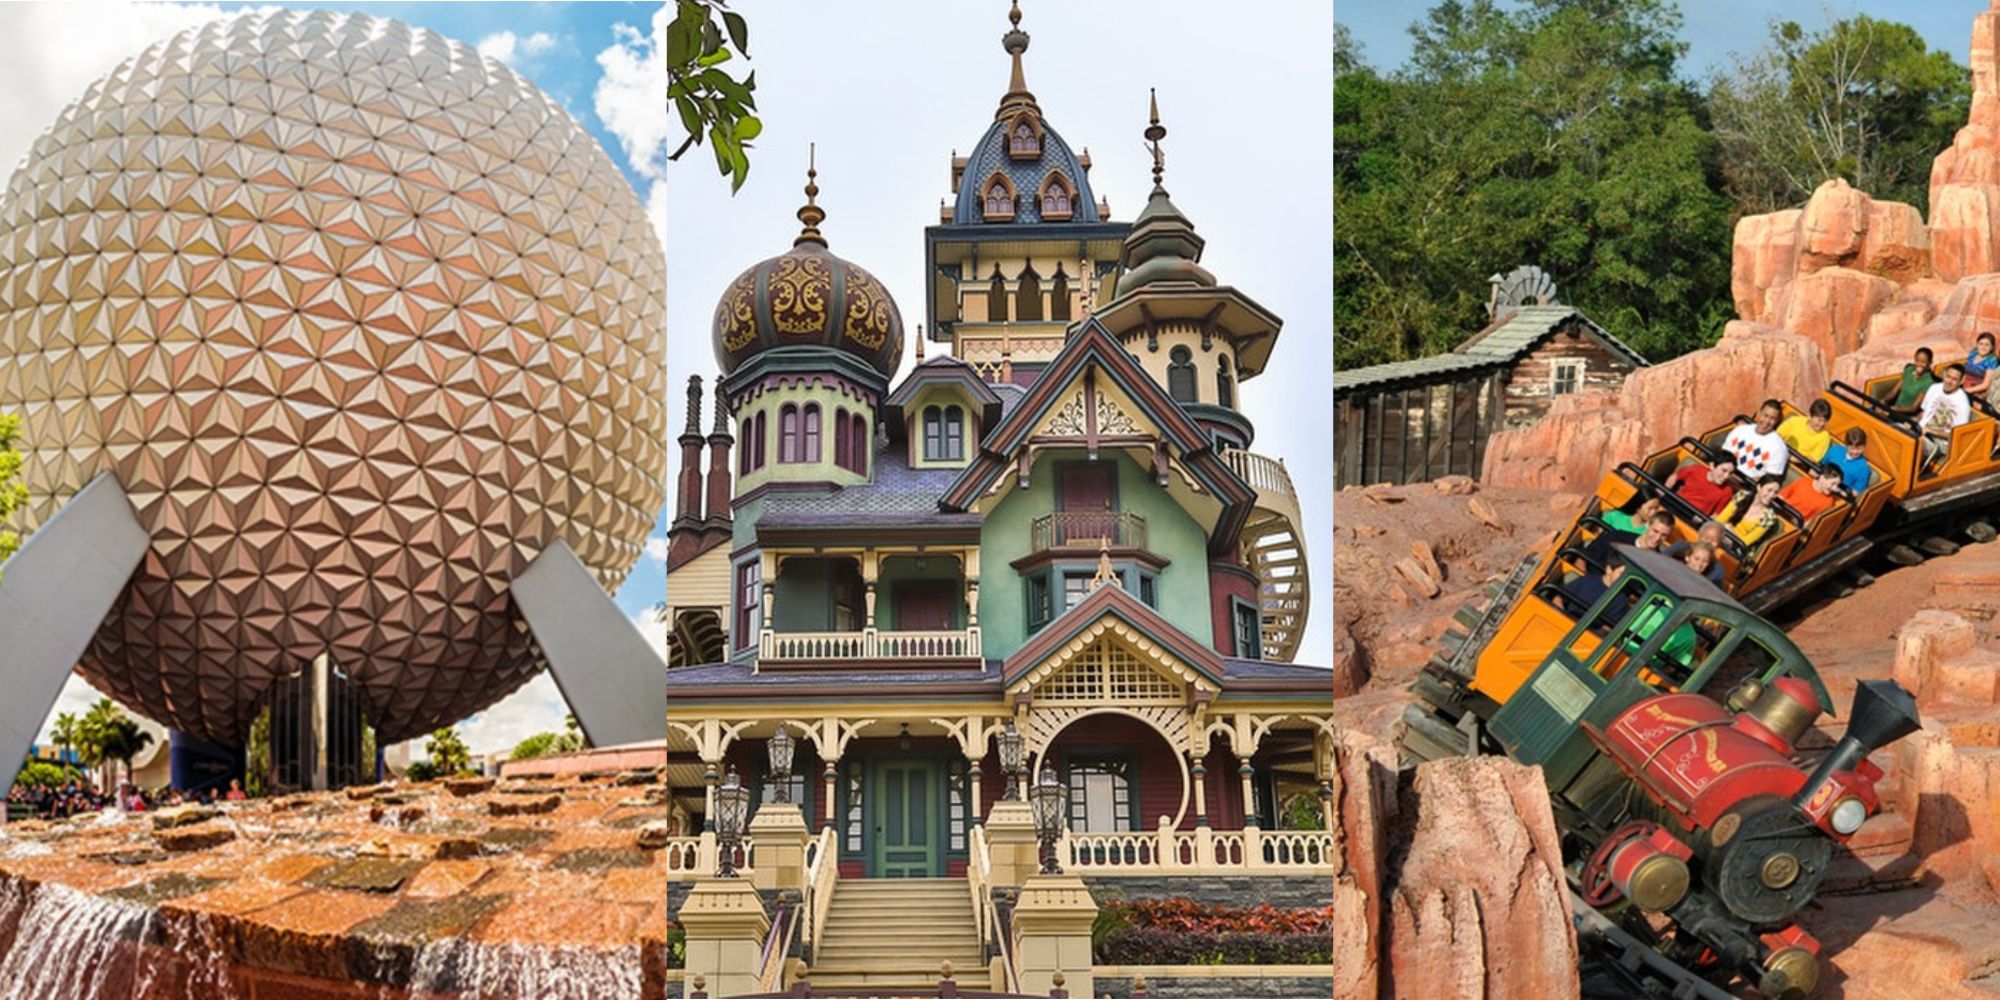 Parques de Disney: las 10 mejores atracciones no temáticas de películas